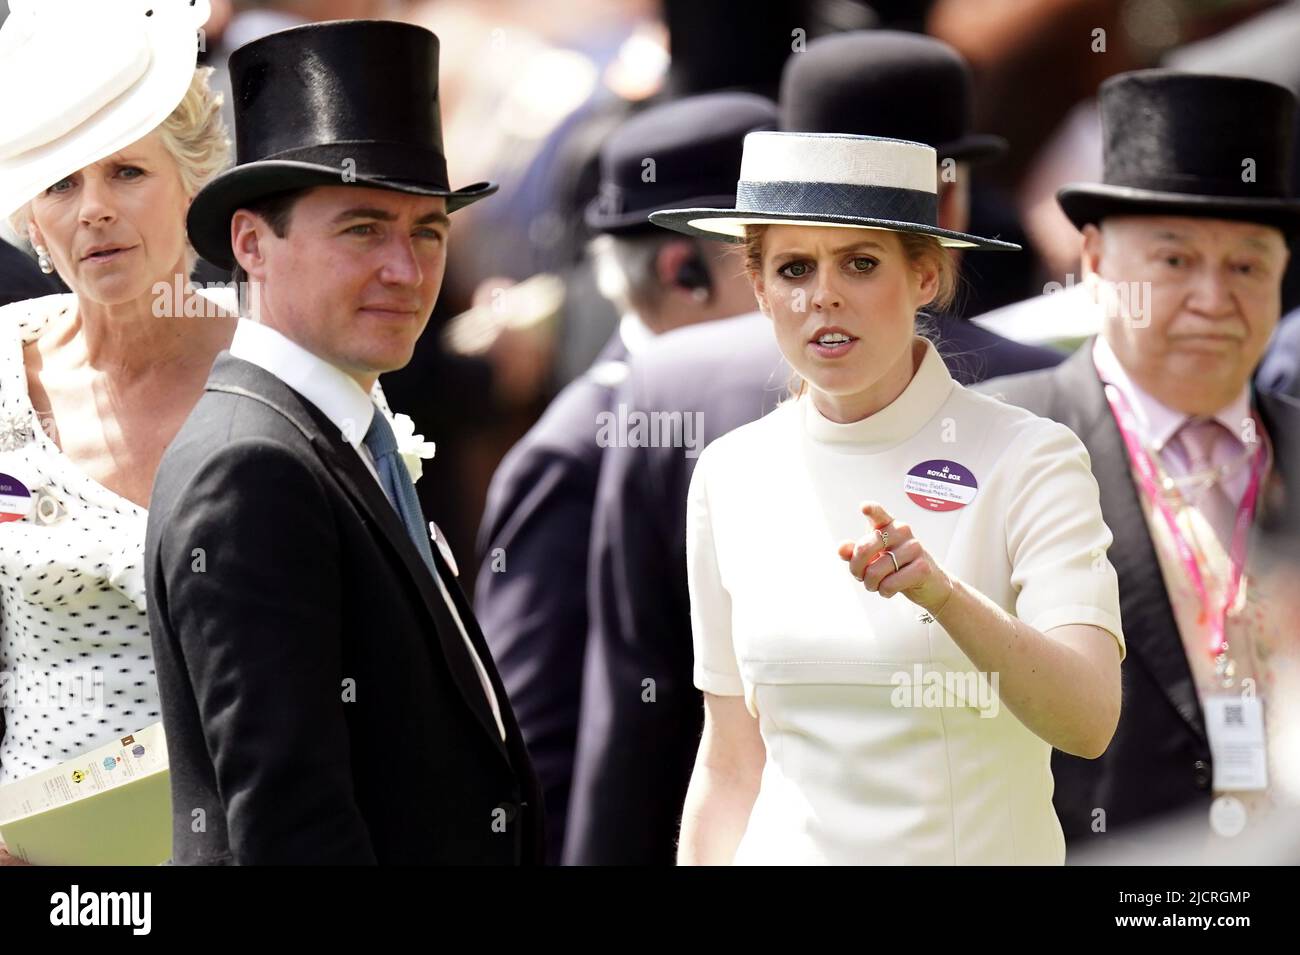 Prinzessin Beatrice und Edoardo Mapelli Mozzi kommen in der königlichen Prozession während des zweiten Tages von Royal Ascot auf der Pferderennbahn Ascot an. Bilddatum: Mittwoch, 15. Juni 2022. Stockfoto